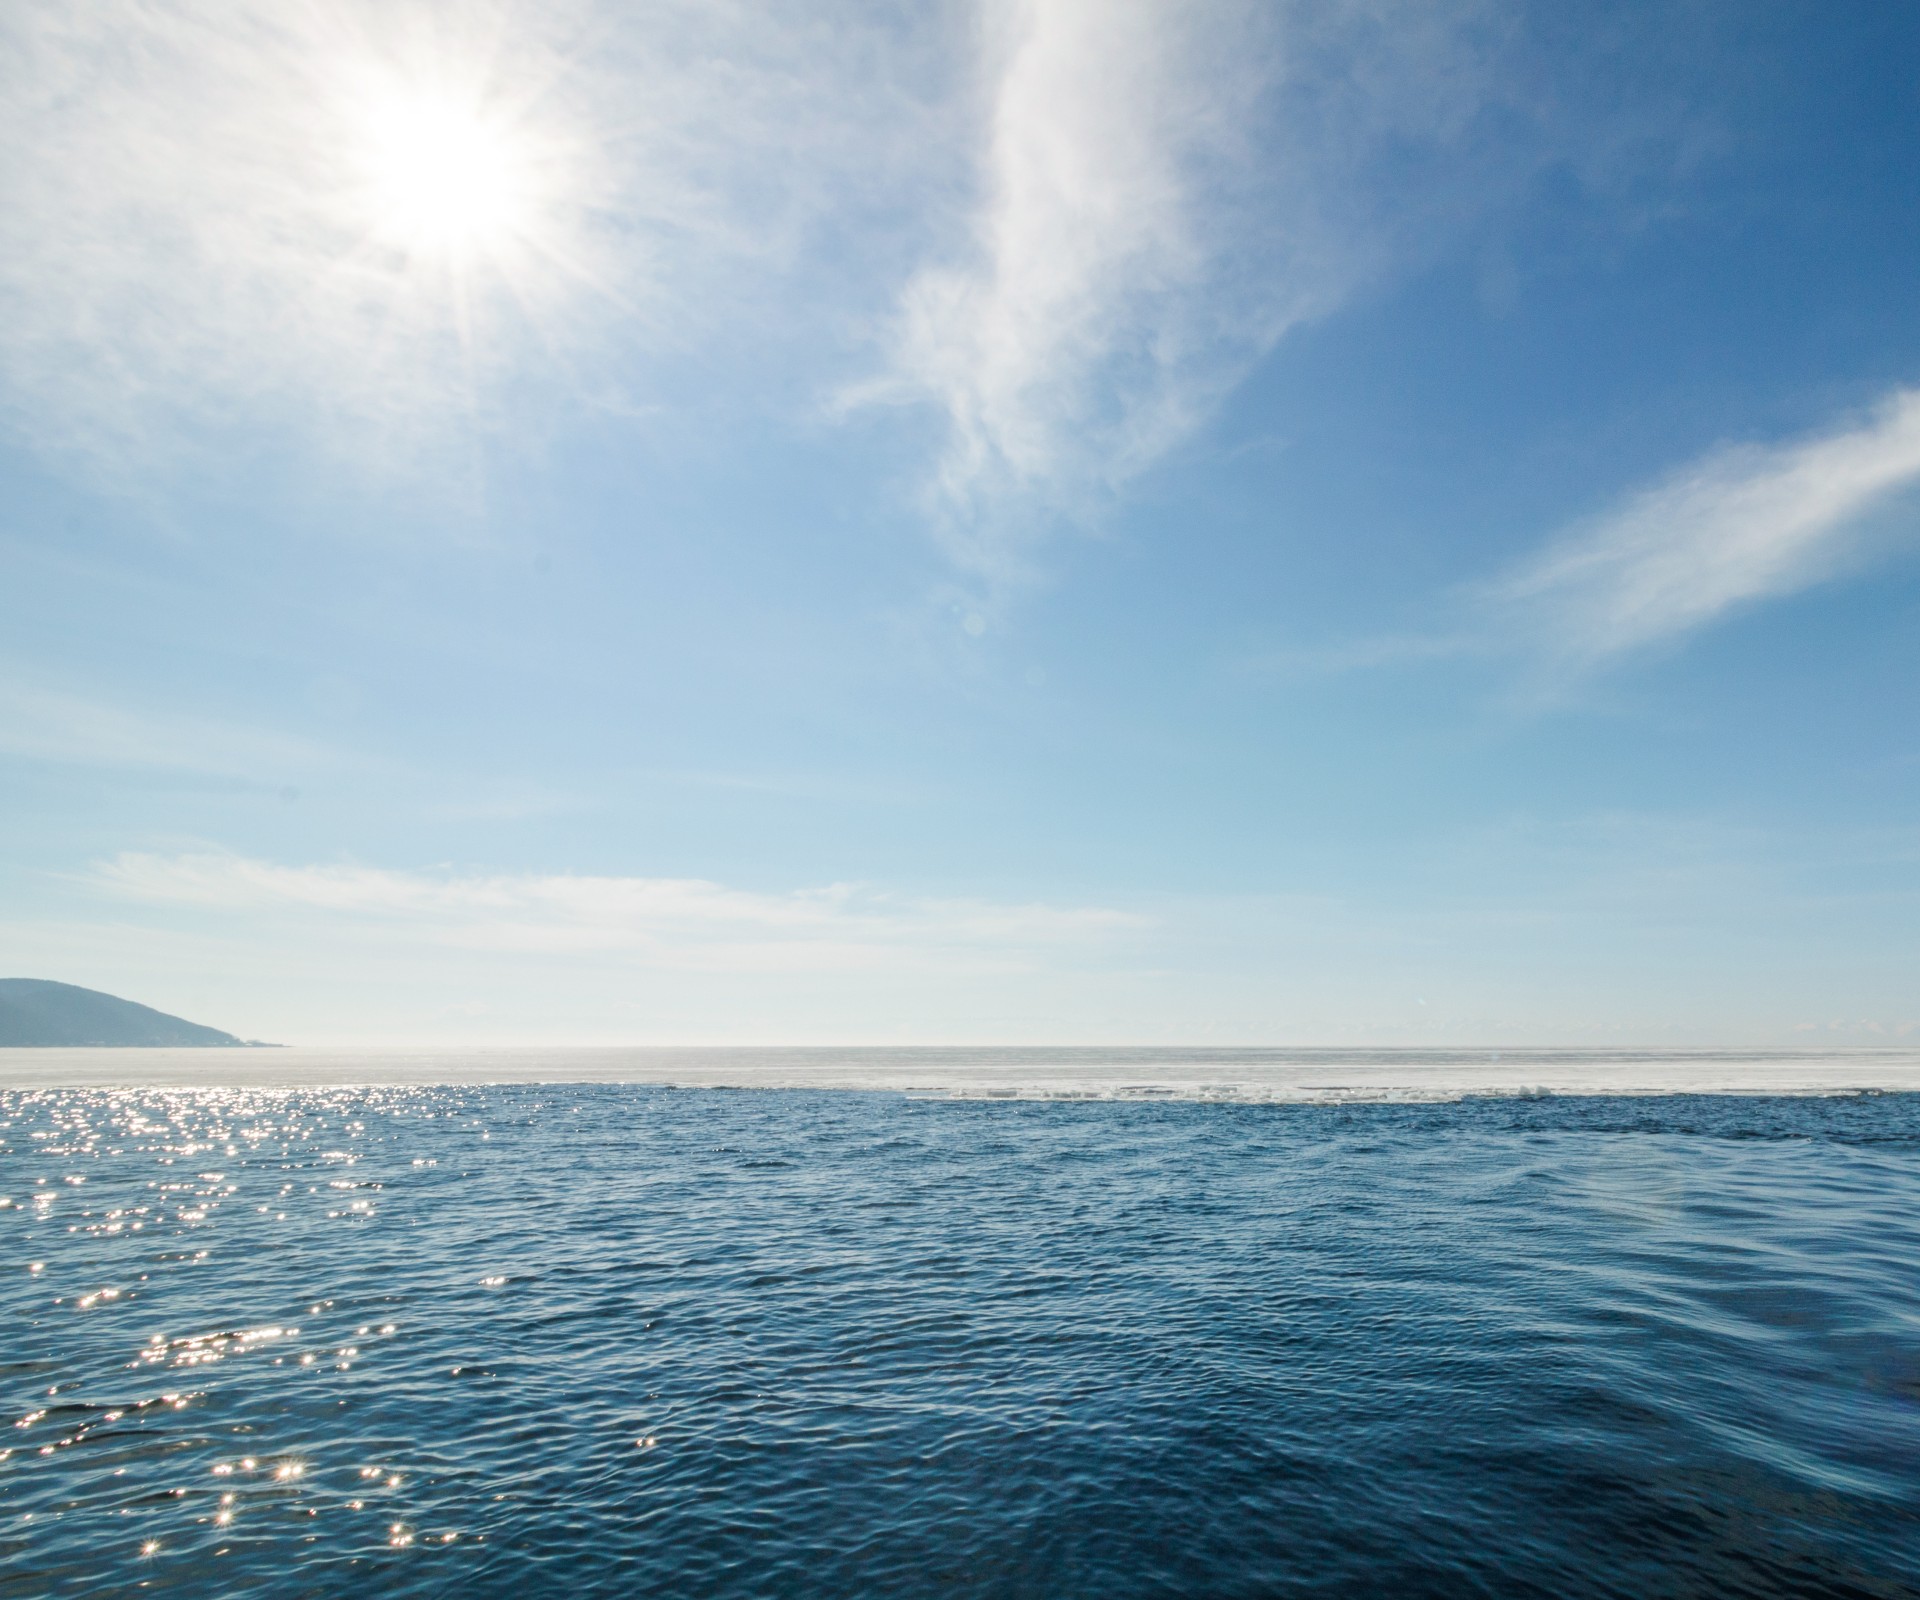 Weitblick auf das Meer mit Sonnenreflexionen und blauem Himmel mit leichten Schleierwolken